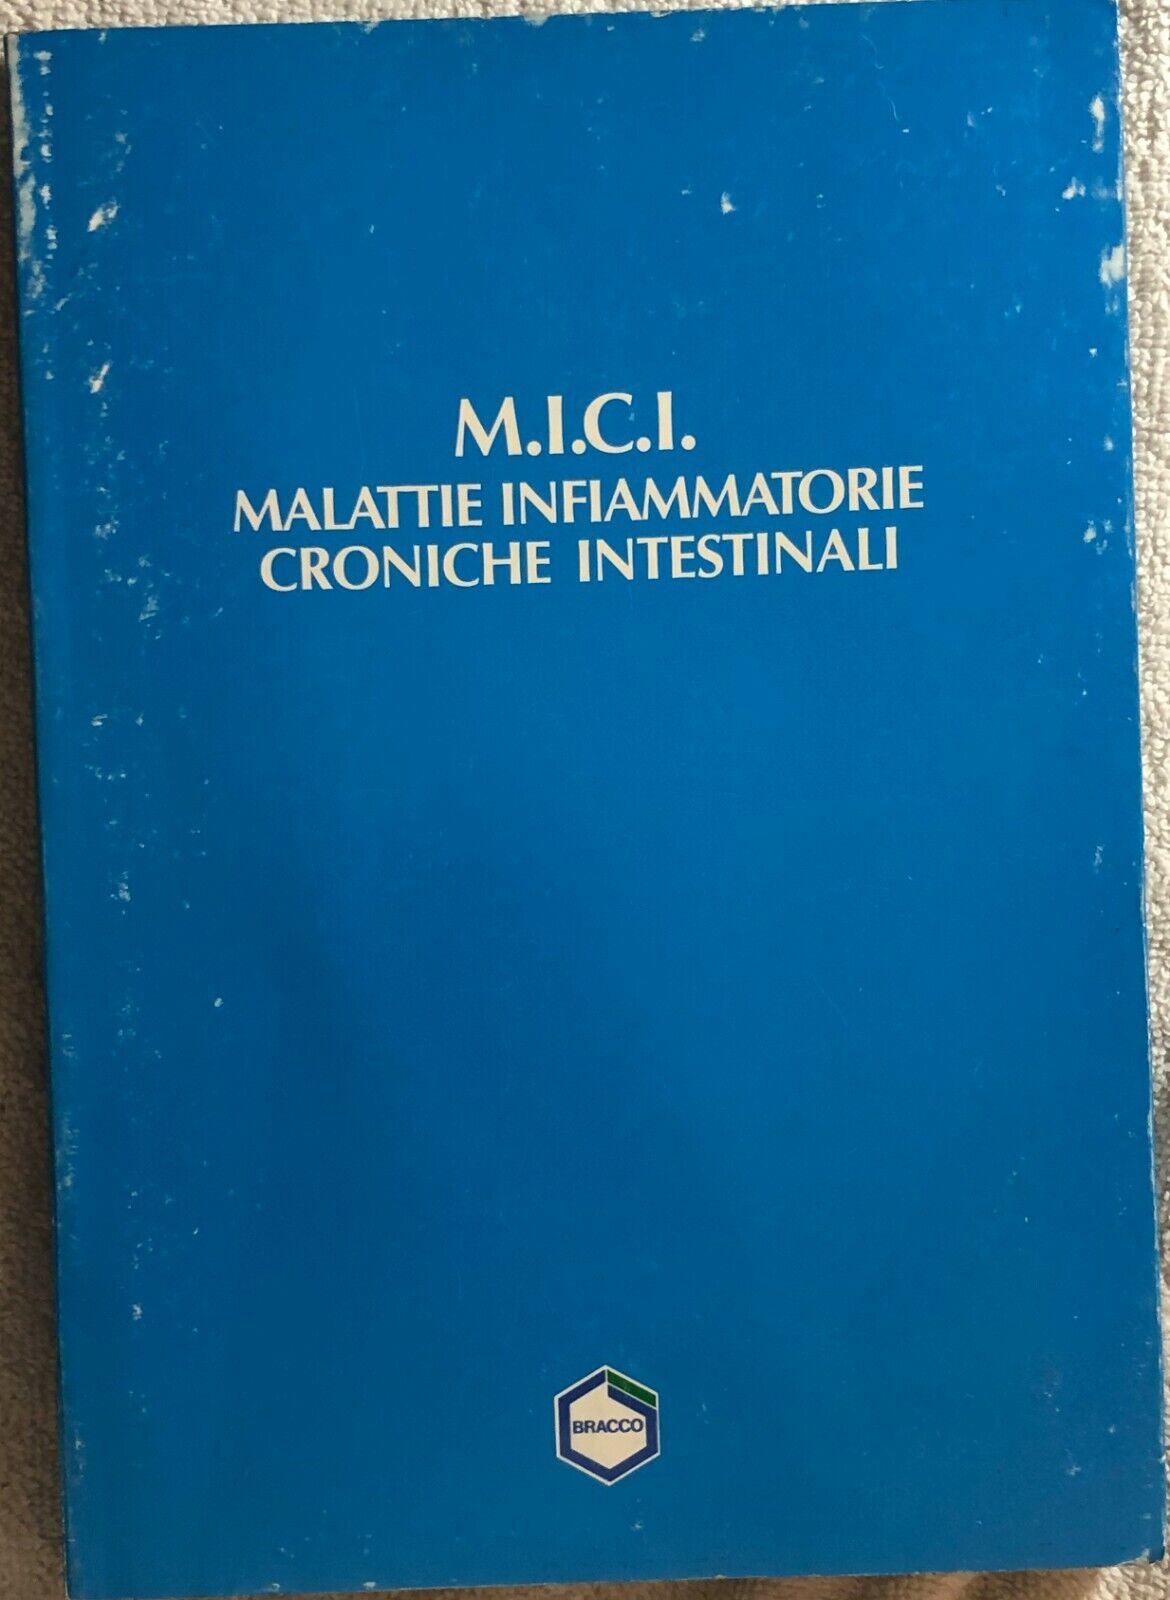 M.I.C.I. Malattie Infiammatorie Croniche Intestinali di Aa.vv.,  Bracco